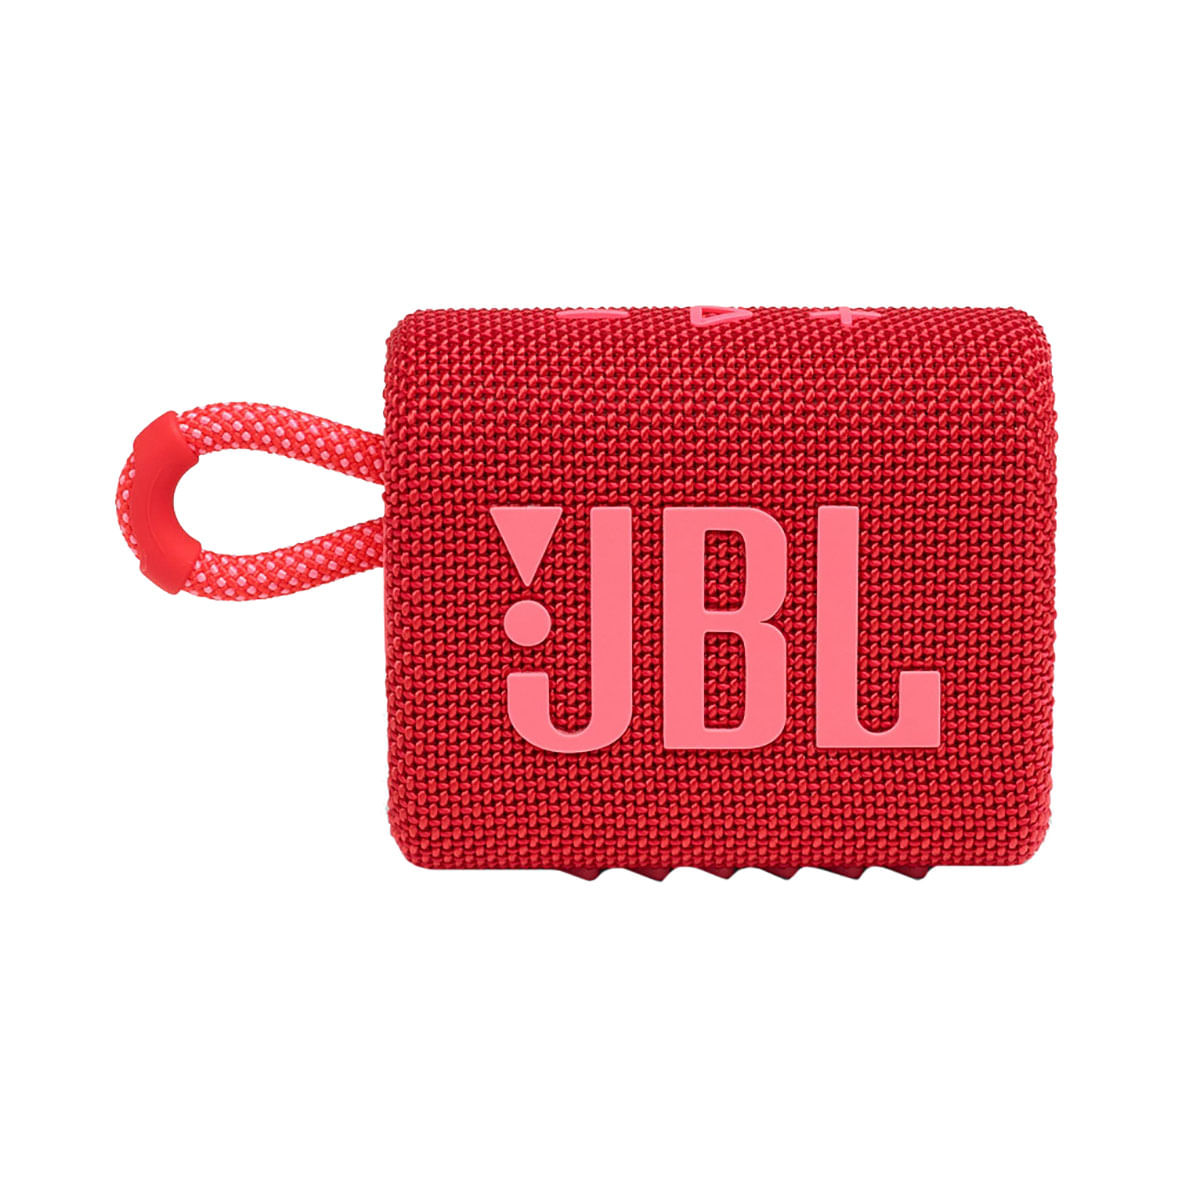 Caixa de Som Portátil JBL Go 3 4.2W RMS Bluetooth 5.1 À Prova D'Agua Vermelha